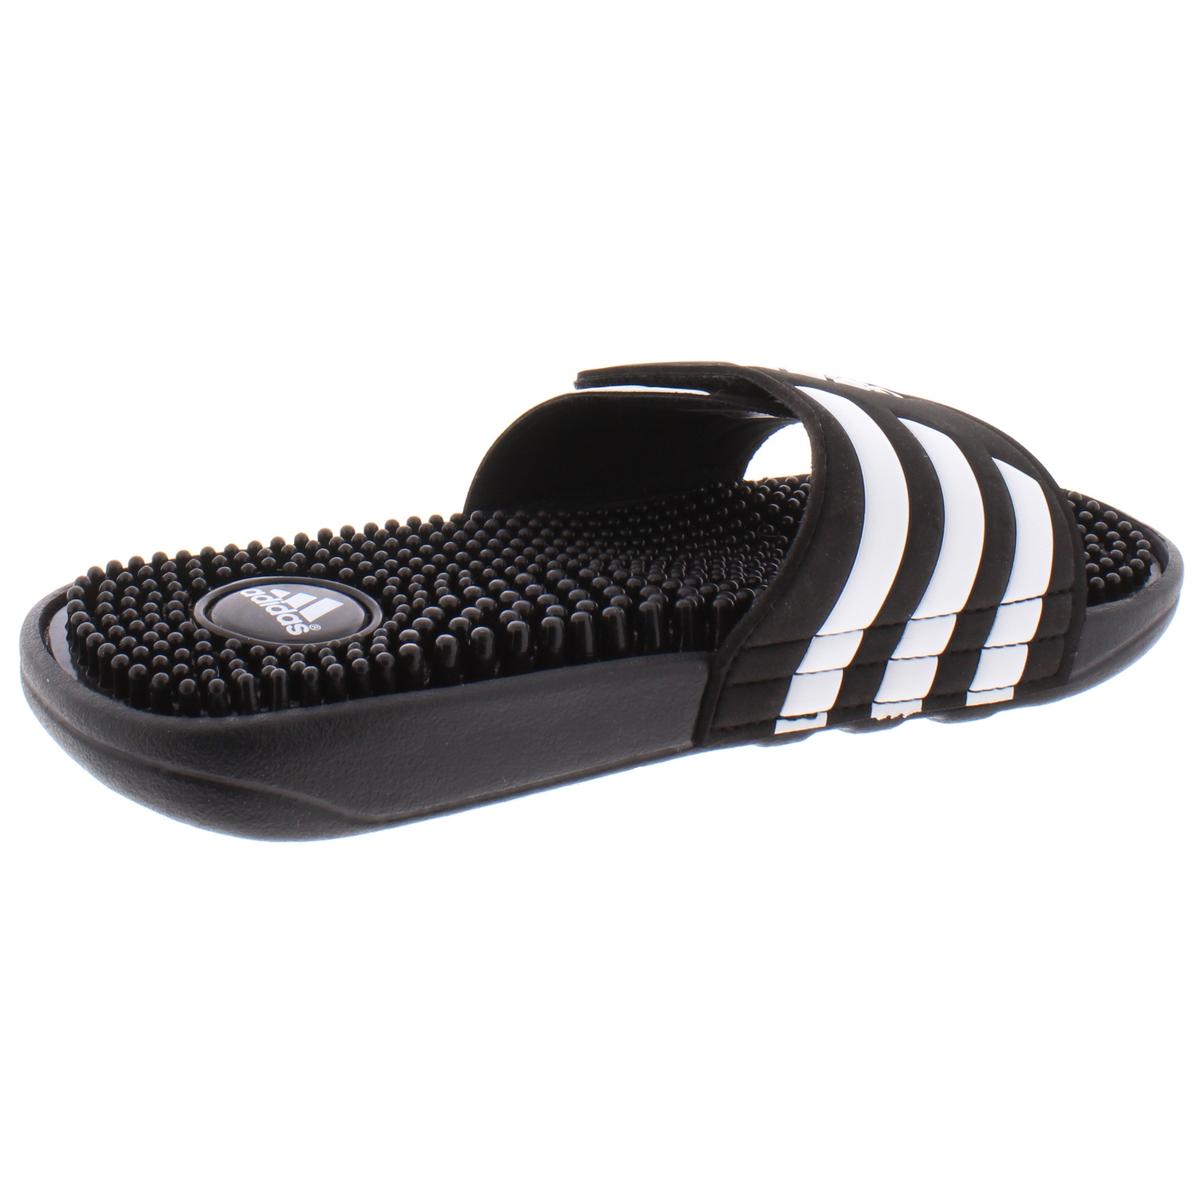 Adidas Boys Addisage K Black Pool Slides 3 Medium (D) Little Kid BHFO ...